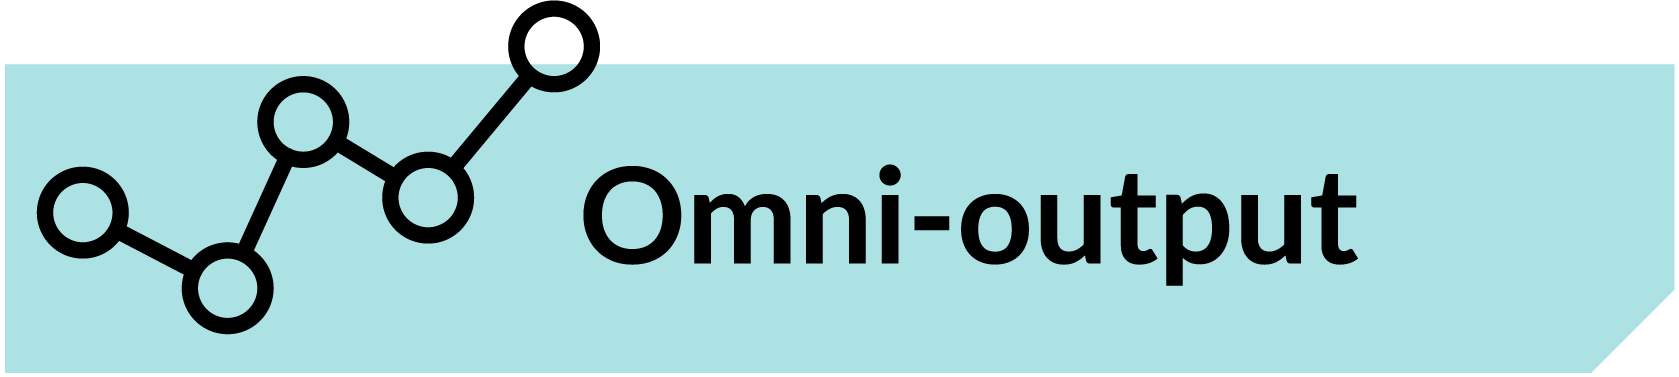 Omni-output